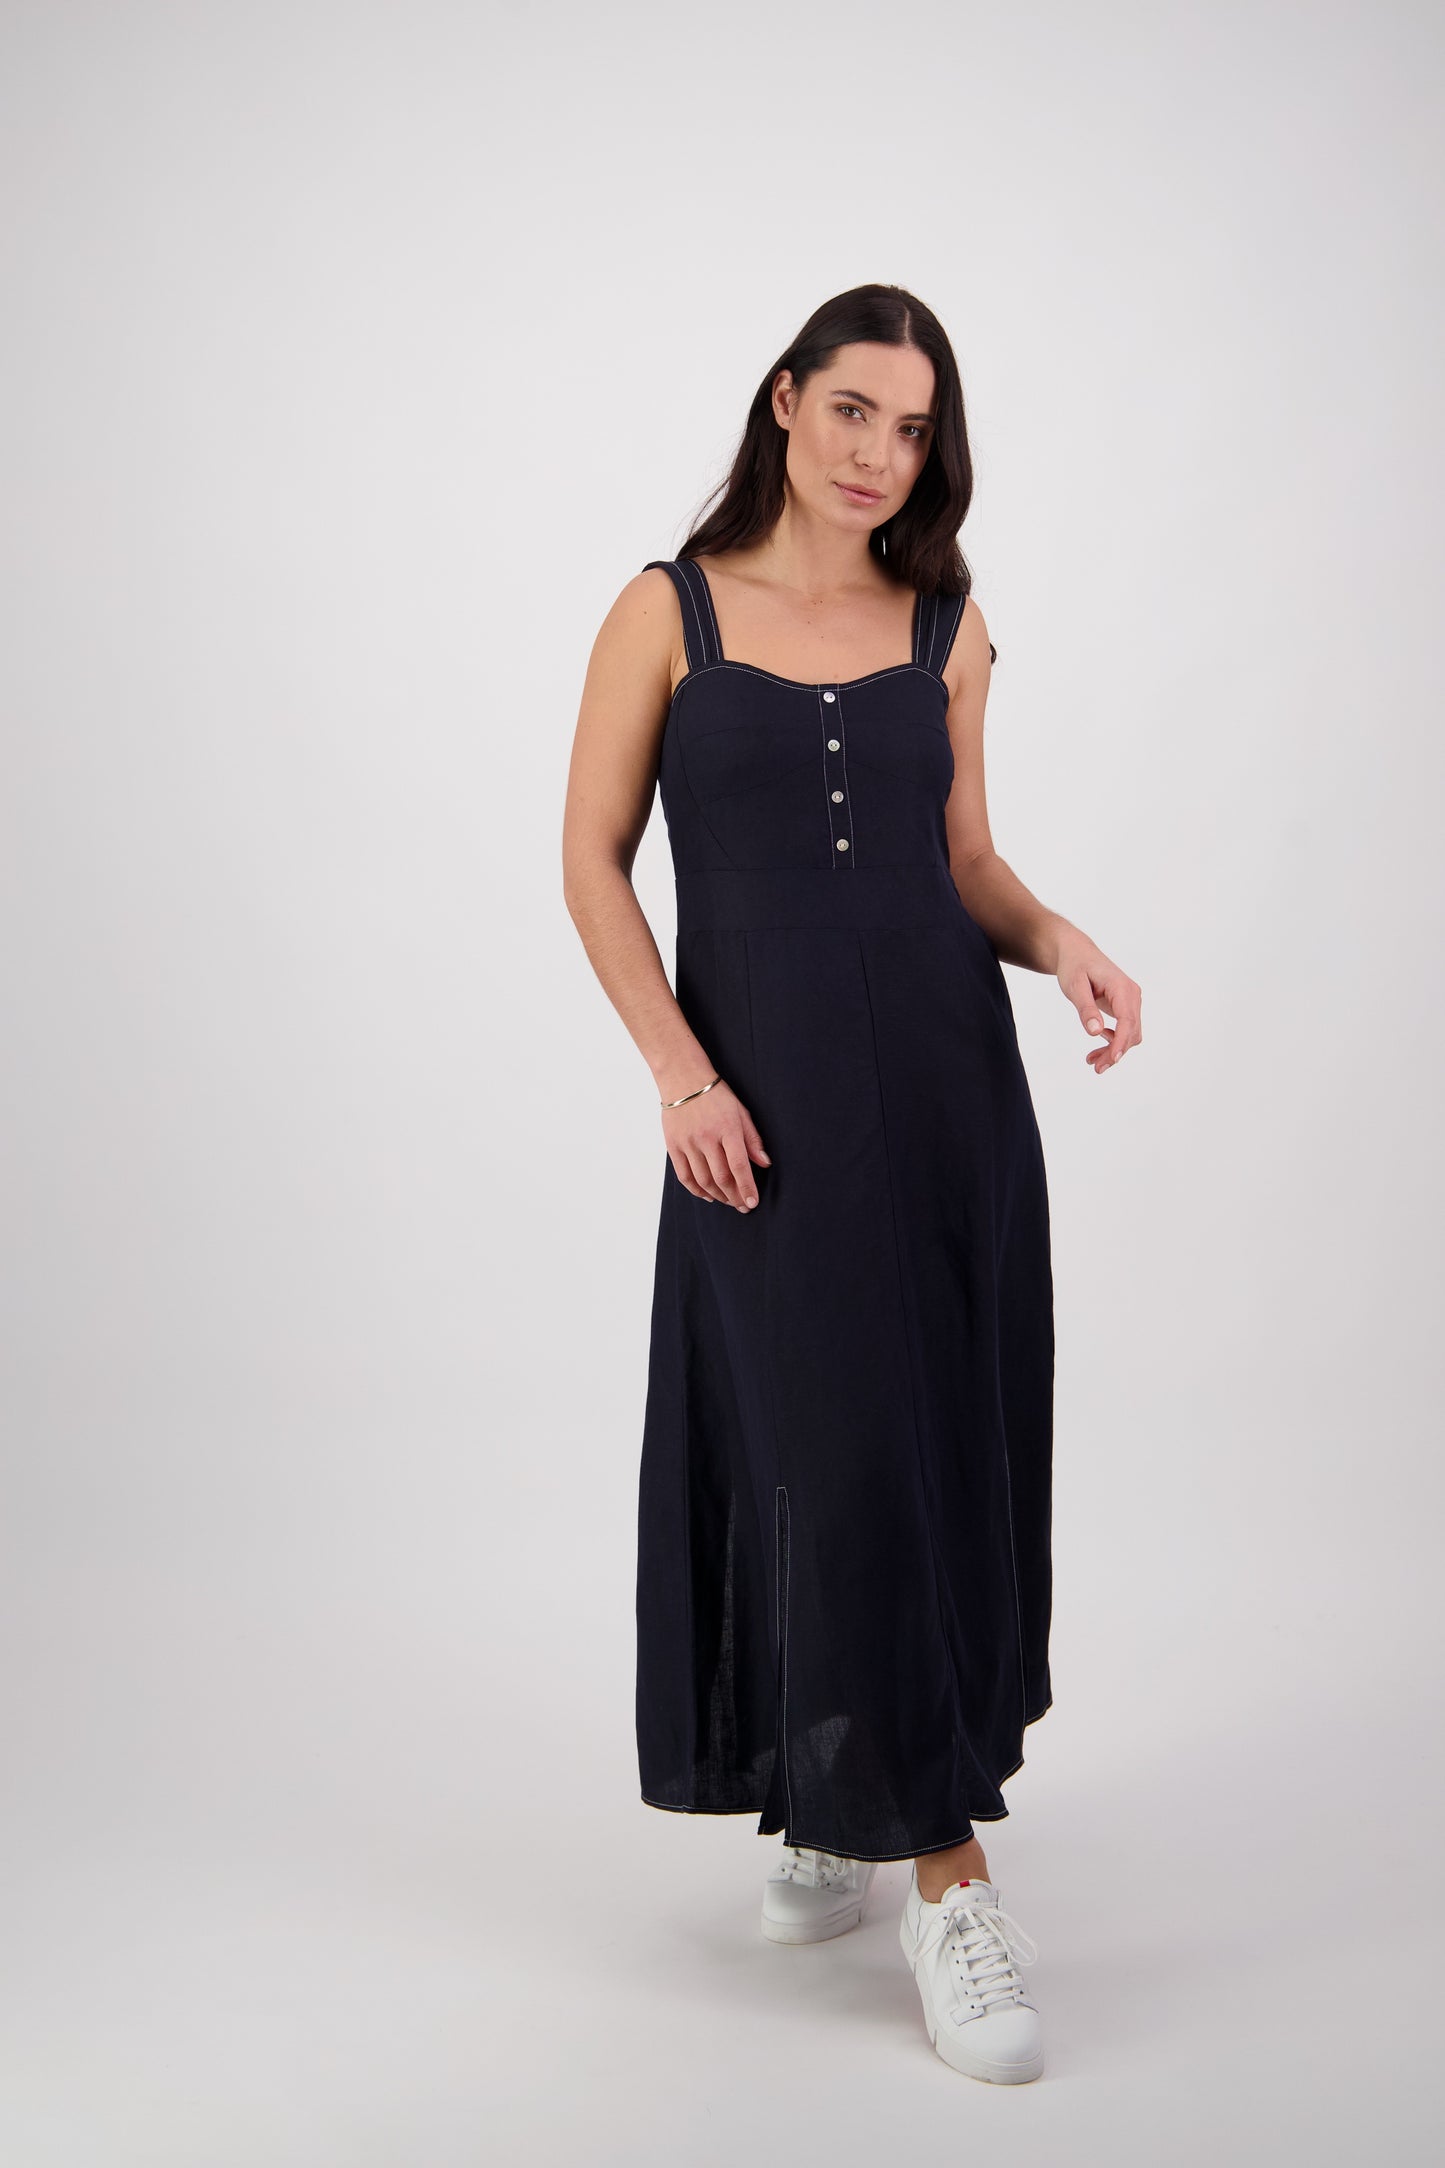 Vassalli Ink with Wide Straps Sleeveless Dress